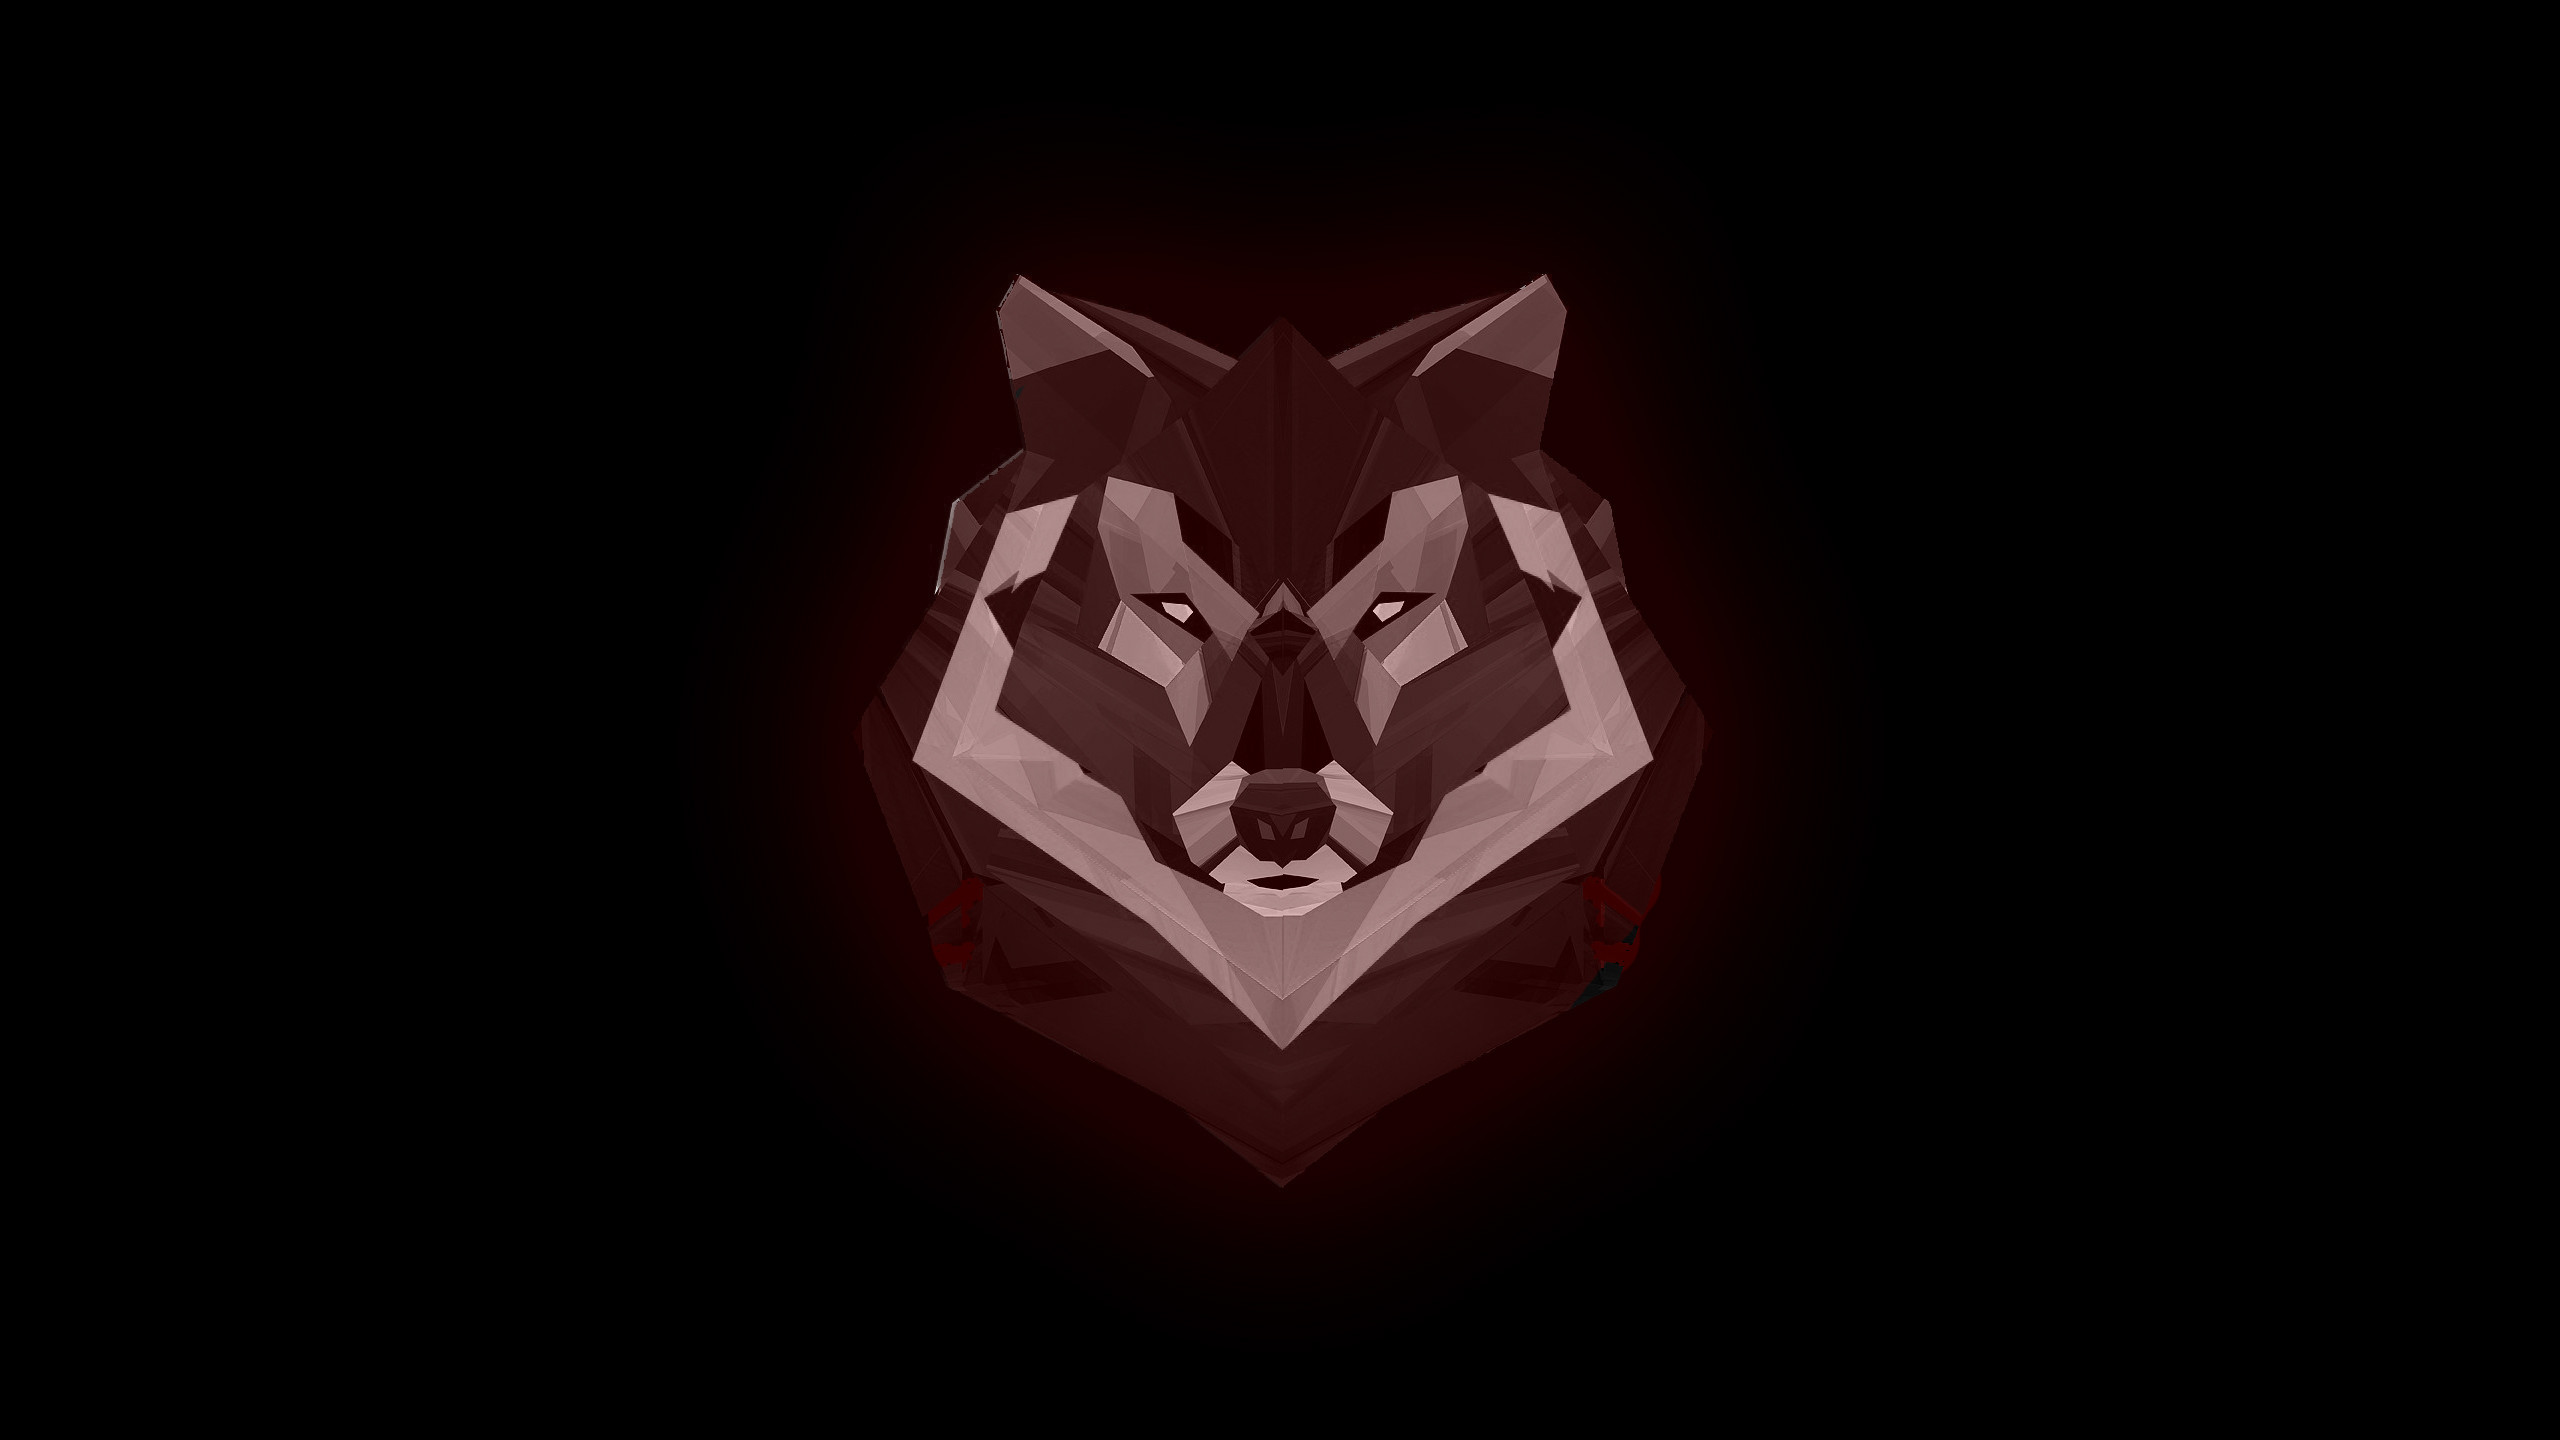 2560x1440 Wallpaper Wolf